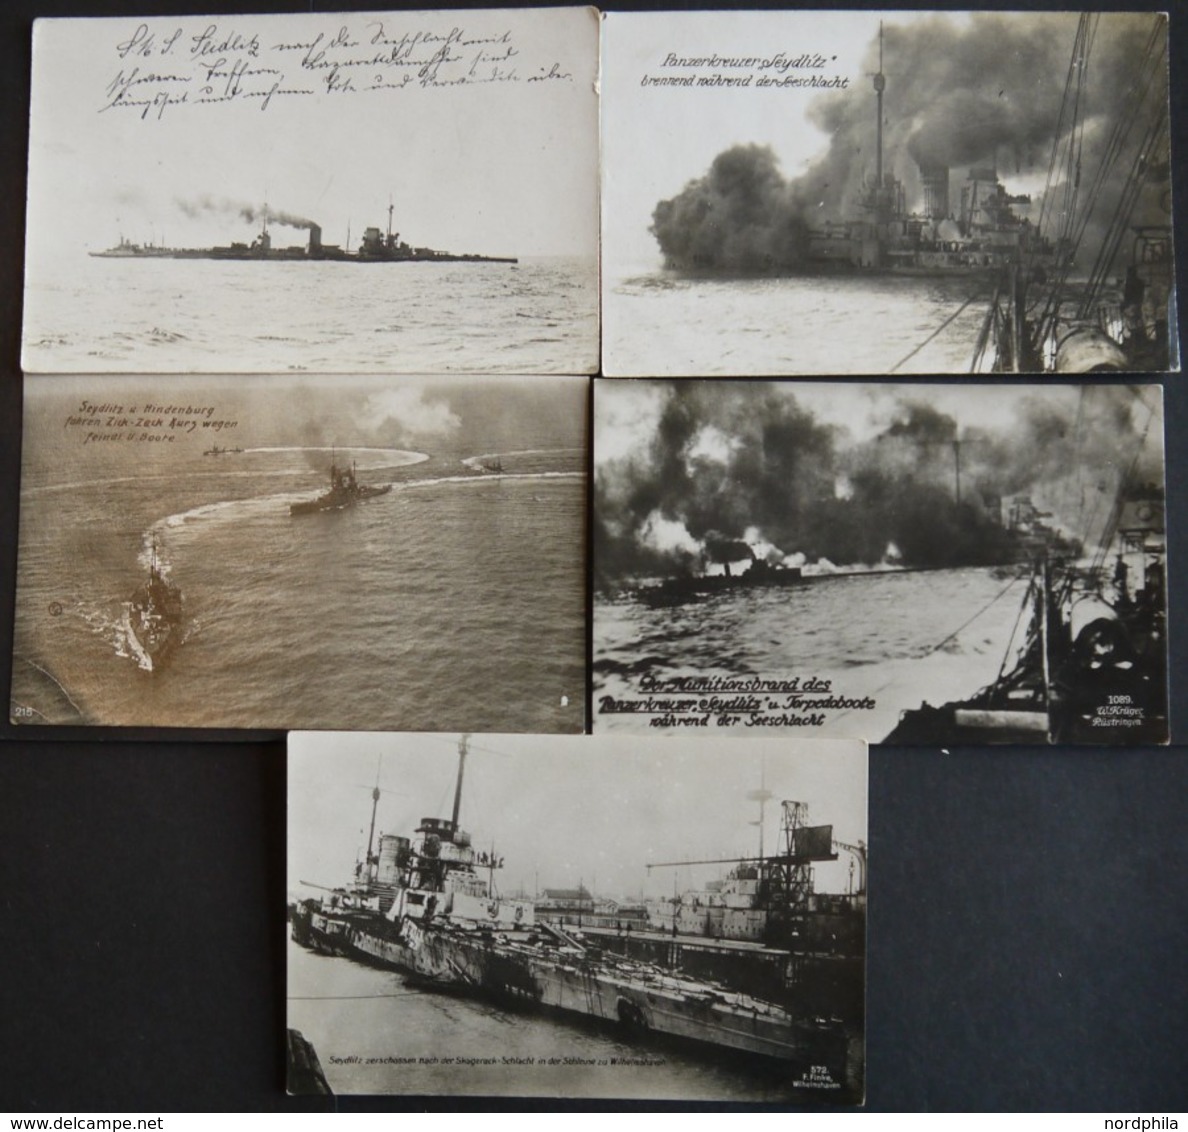 ALTE POSTKARTEN - SCHIFFE KAISERL. MARINE S.M.S. Seydlitz, 5 Verschiedene Fotokarten, Meist Fotos Von Seeschlachten, Pra - Warships